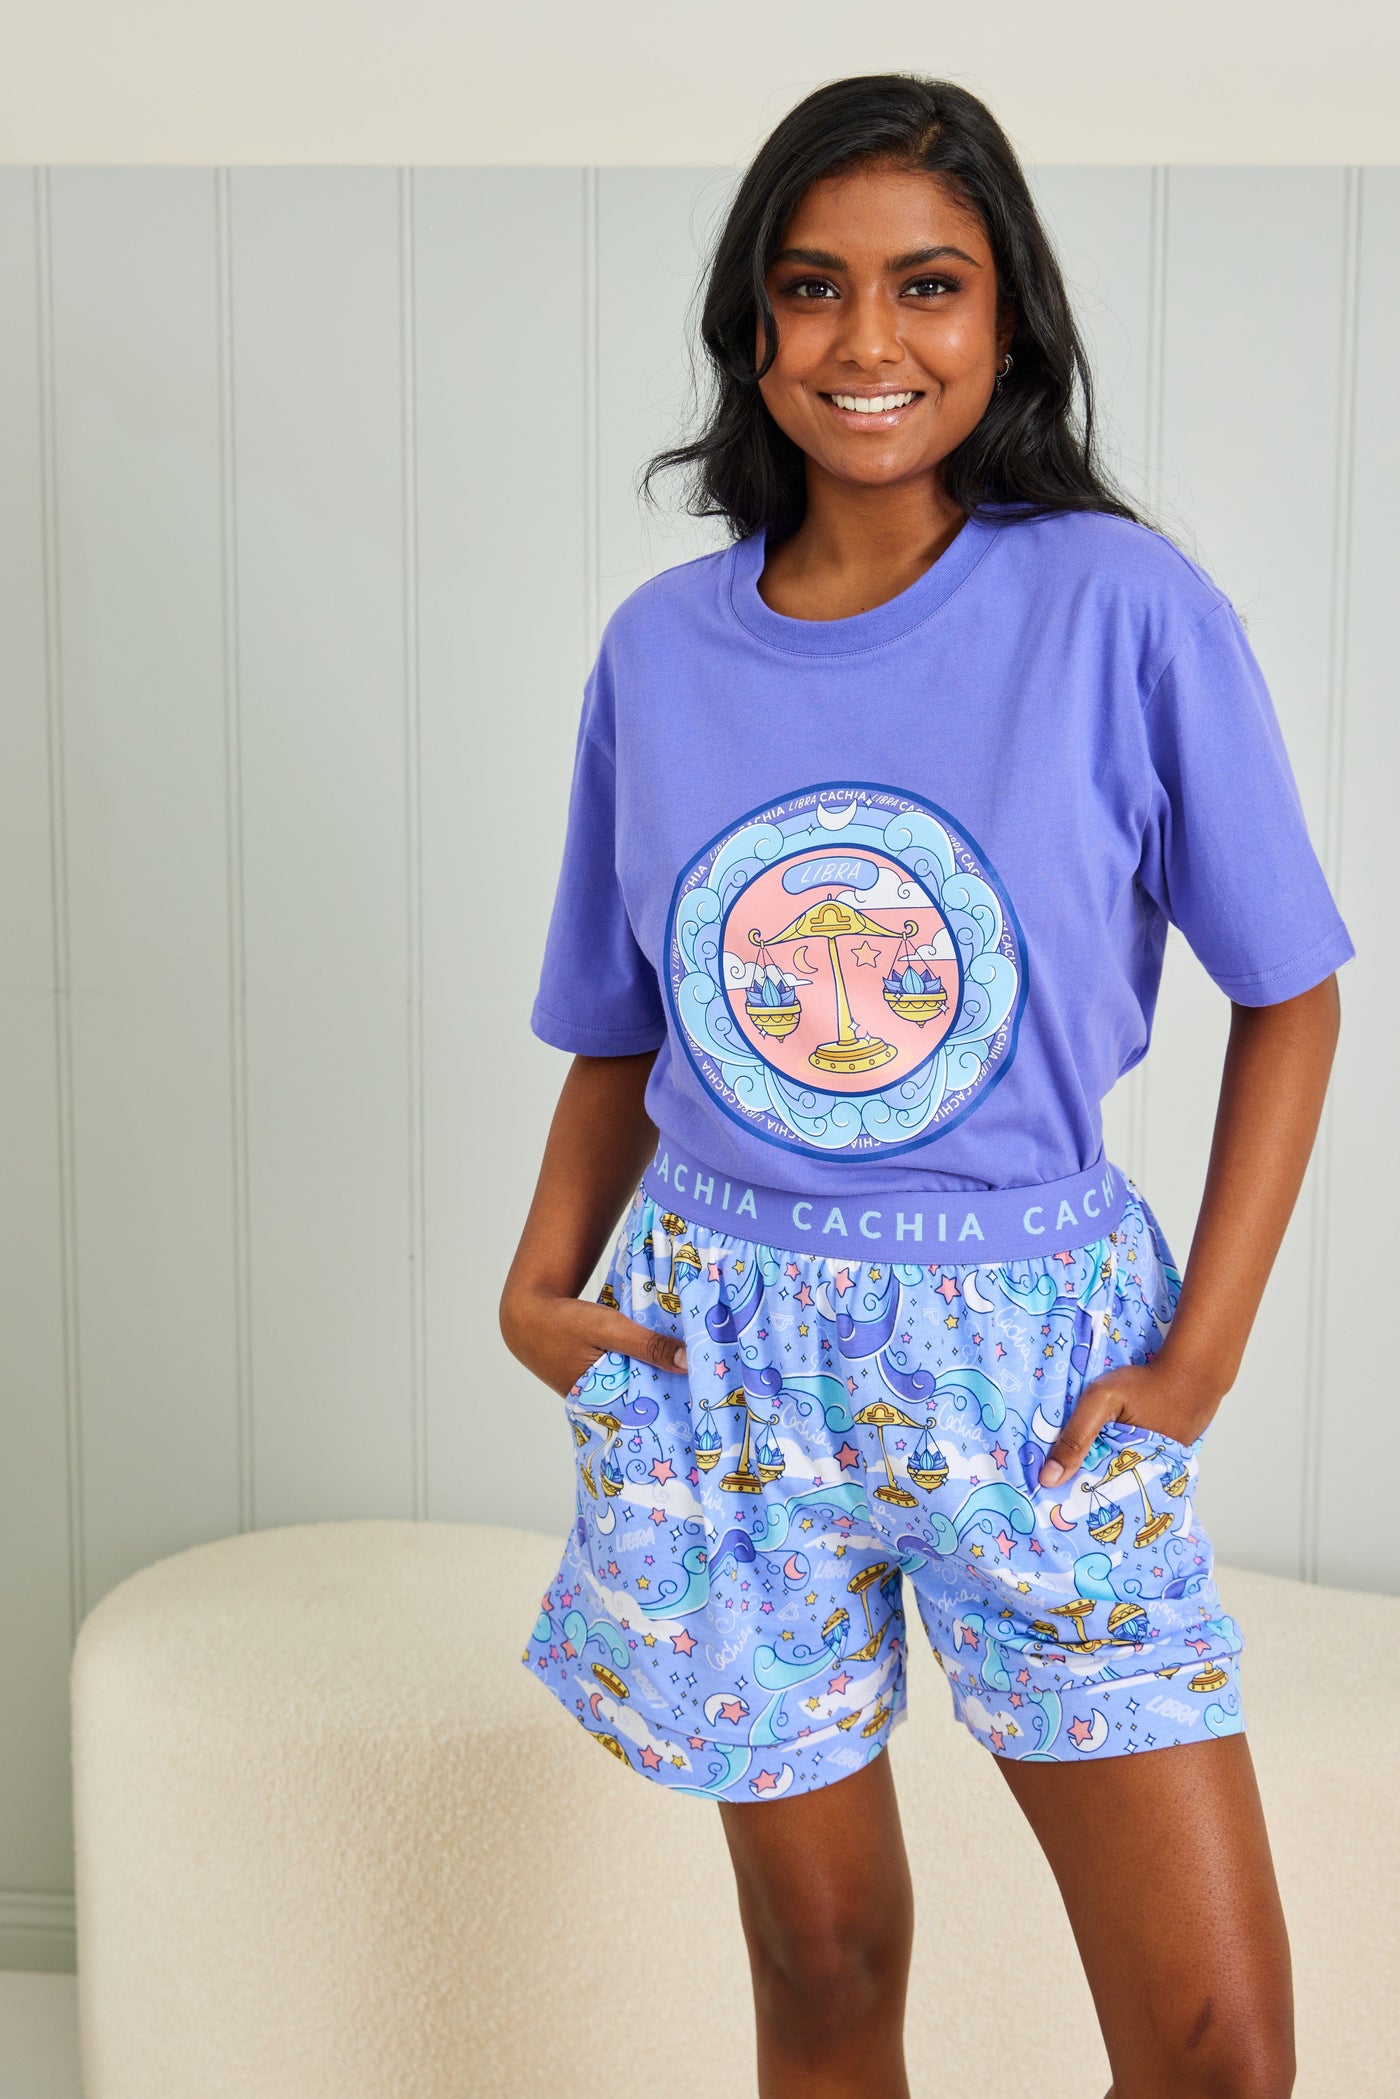 Cachia Libra - Zodiac Pyjama Bundle Pajamas